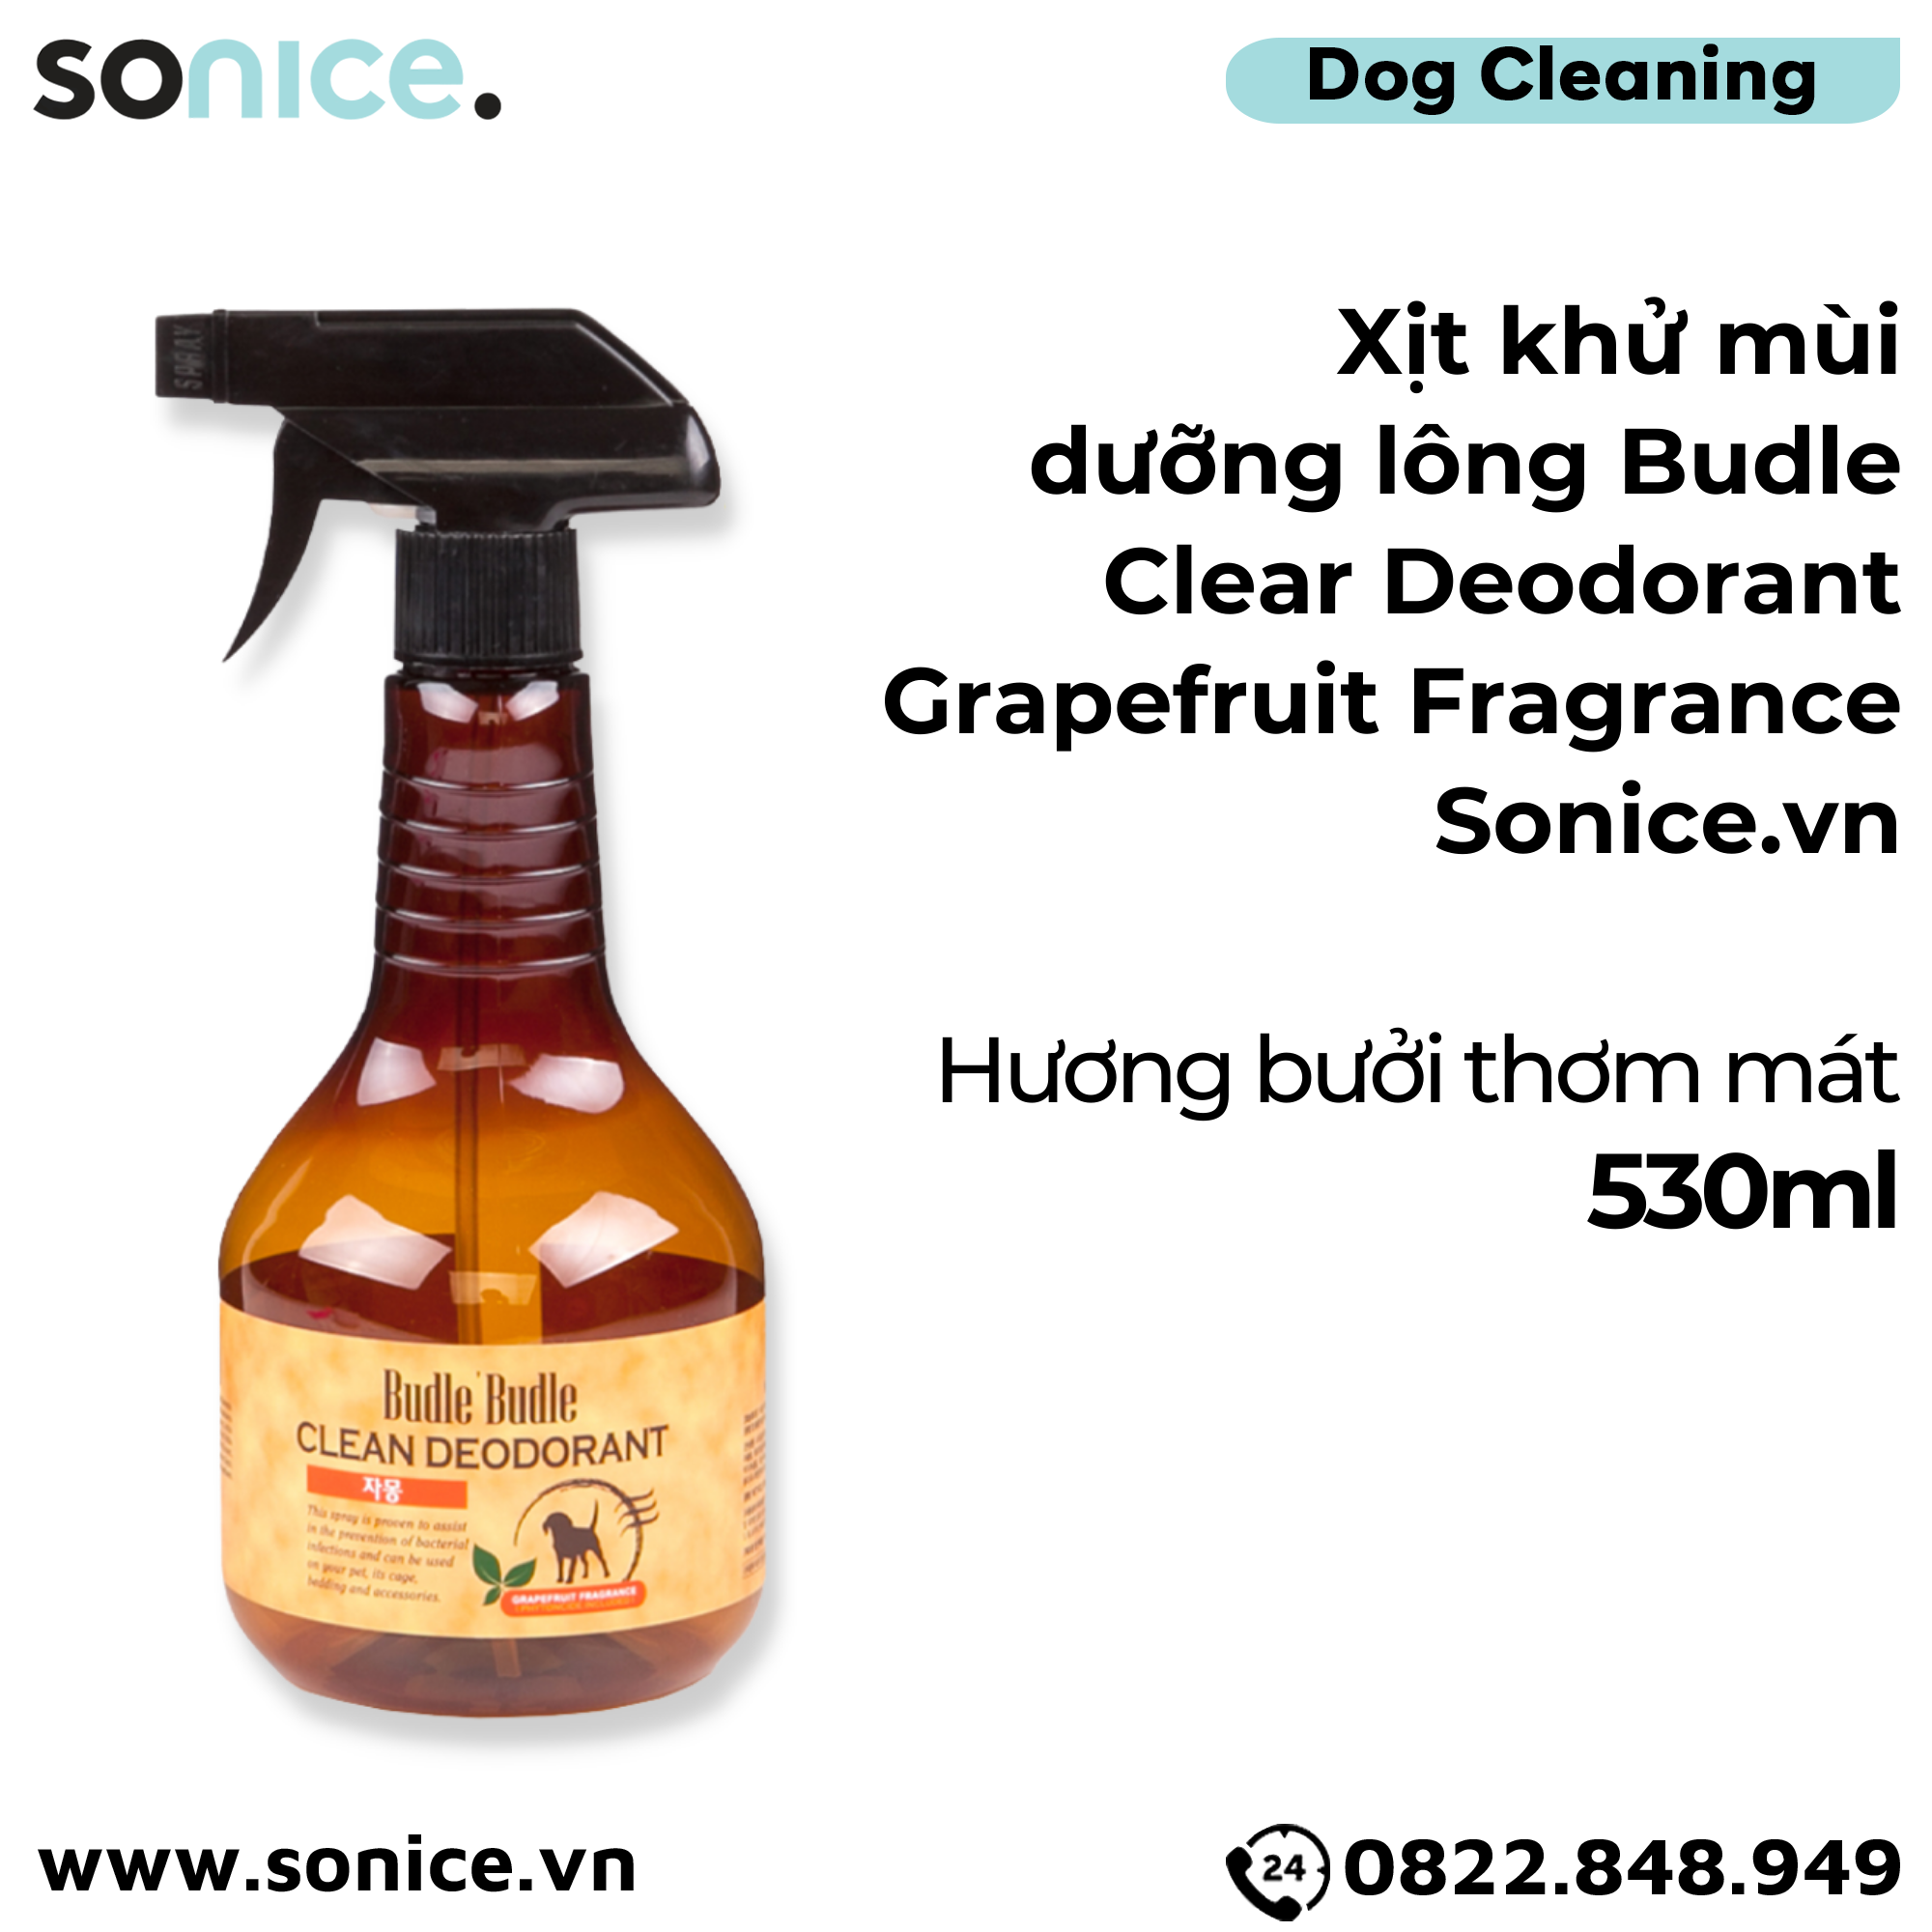  Xịt khử mùi dưỡng lông Budle Clear Deodorant Grapefruit Fragrance 530ml - Hương bưởi thơm mát SONICE. 